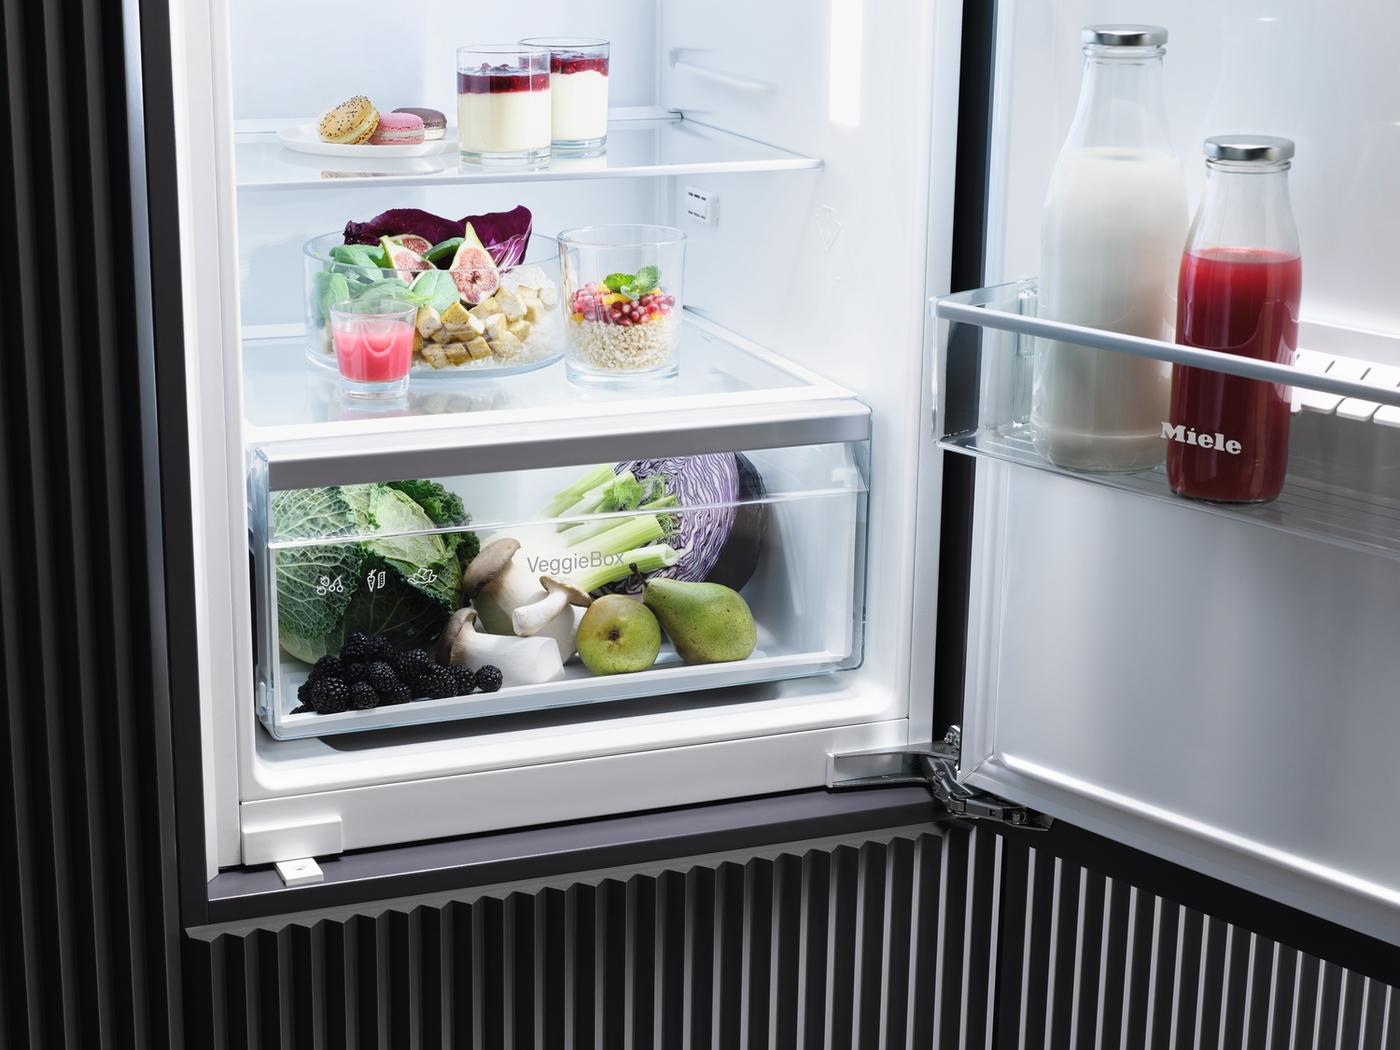 Iebūvējams ledusskapis ar automātisko intensīvo dzesēšanu, 87 cm augstums (K 7125 E) product photo Laydowns Back View ZOOM